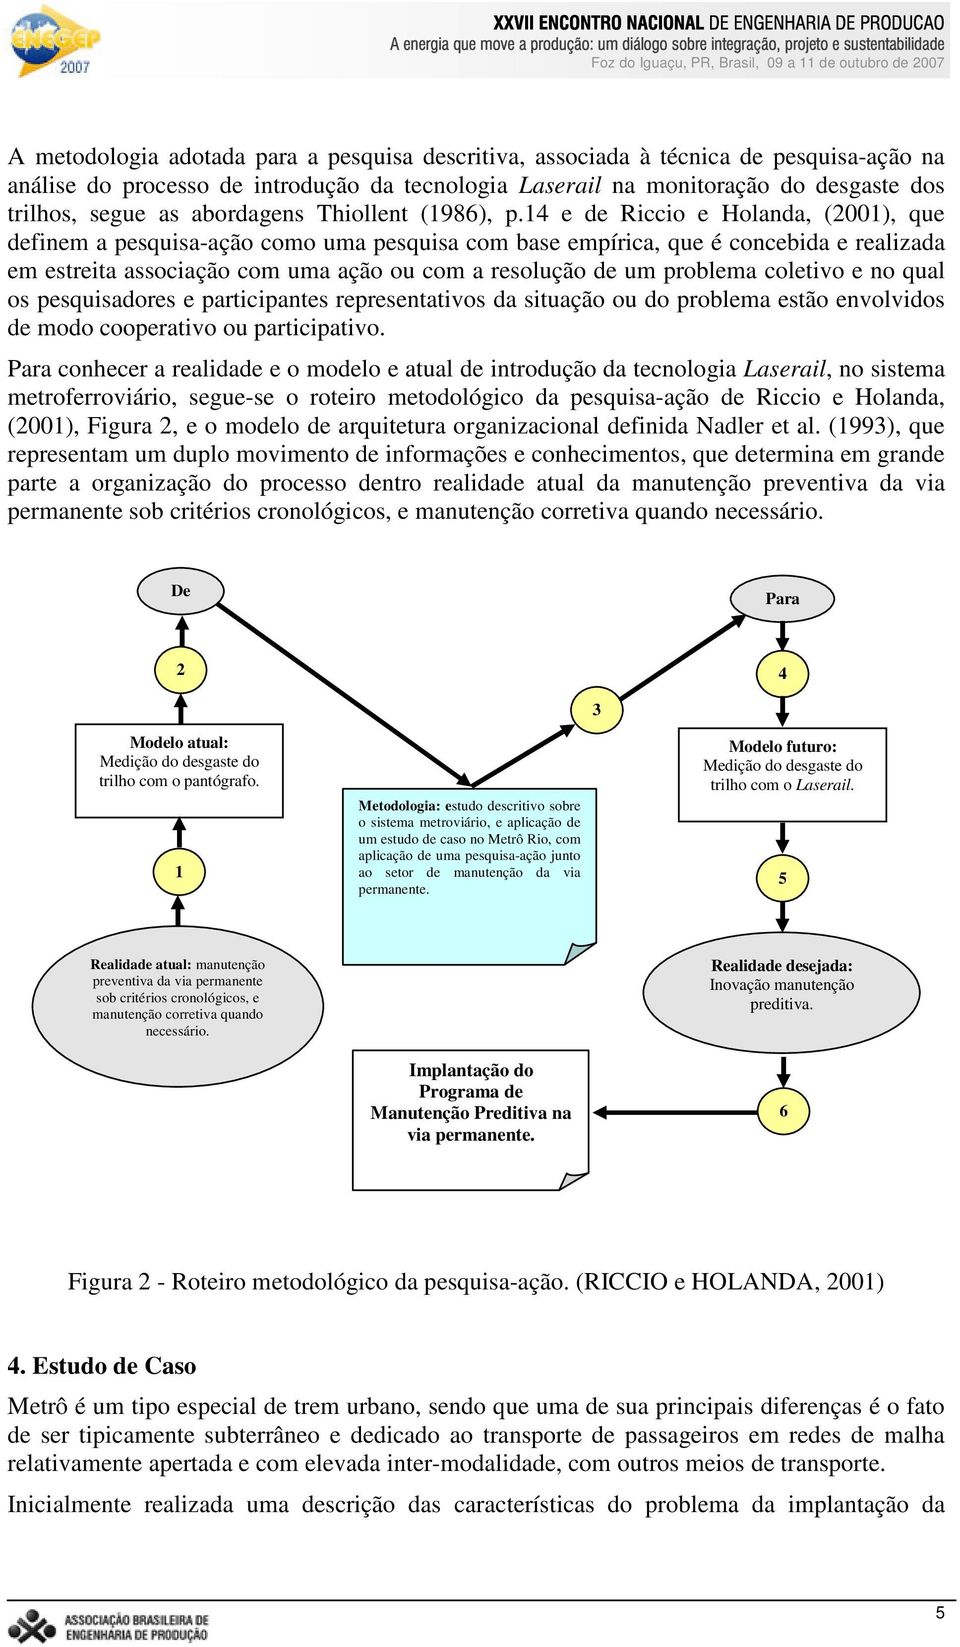 14 e de Riccio e Holanda, (2001), que definem a pesquisa-ação como uma pesquisa com base empírica, que é concebida e realizada em estreita associação com uma ação ou com a resolução de um problema